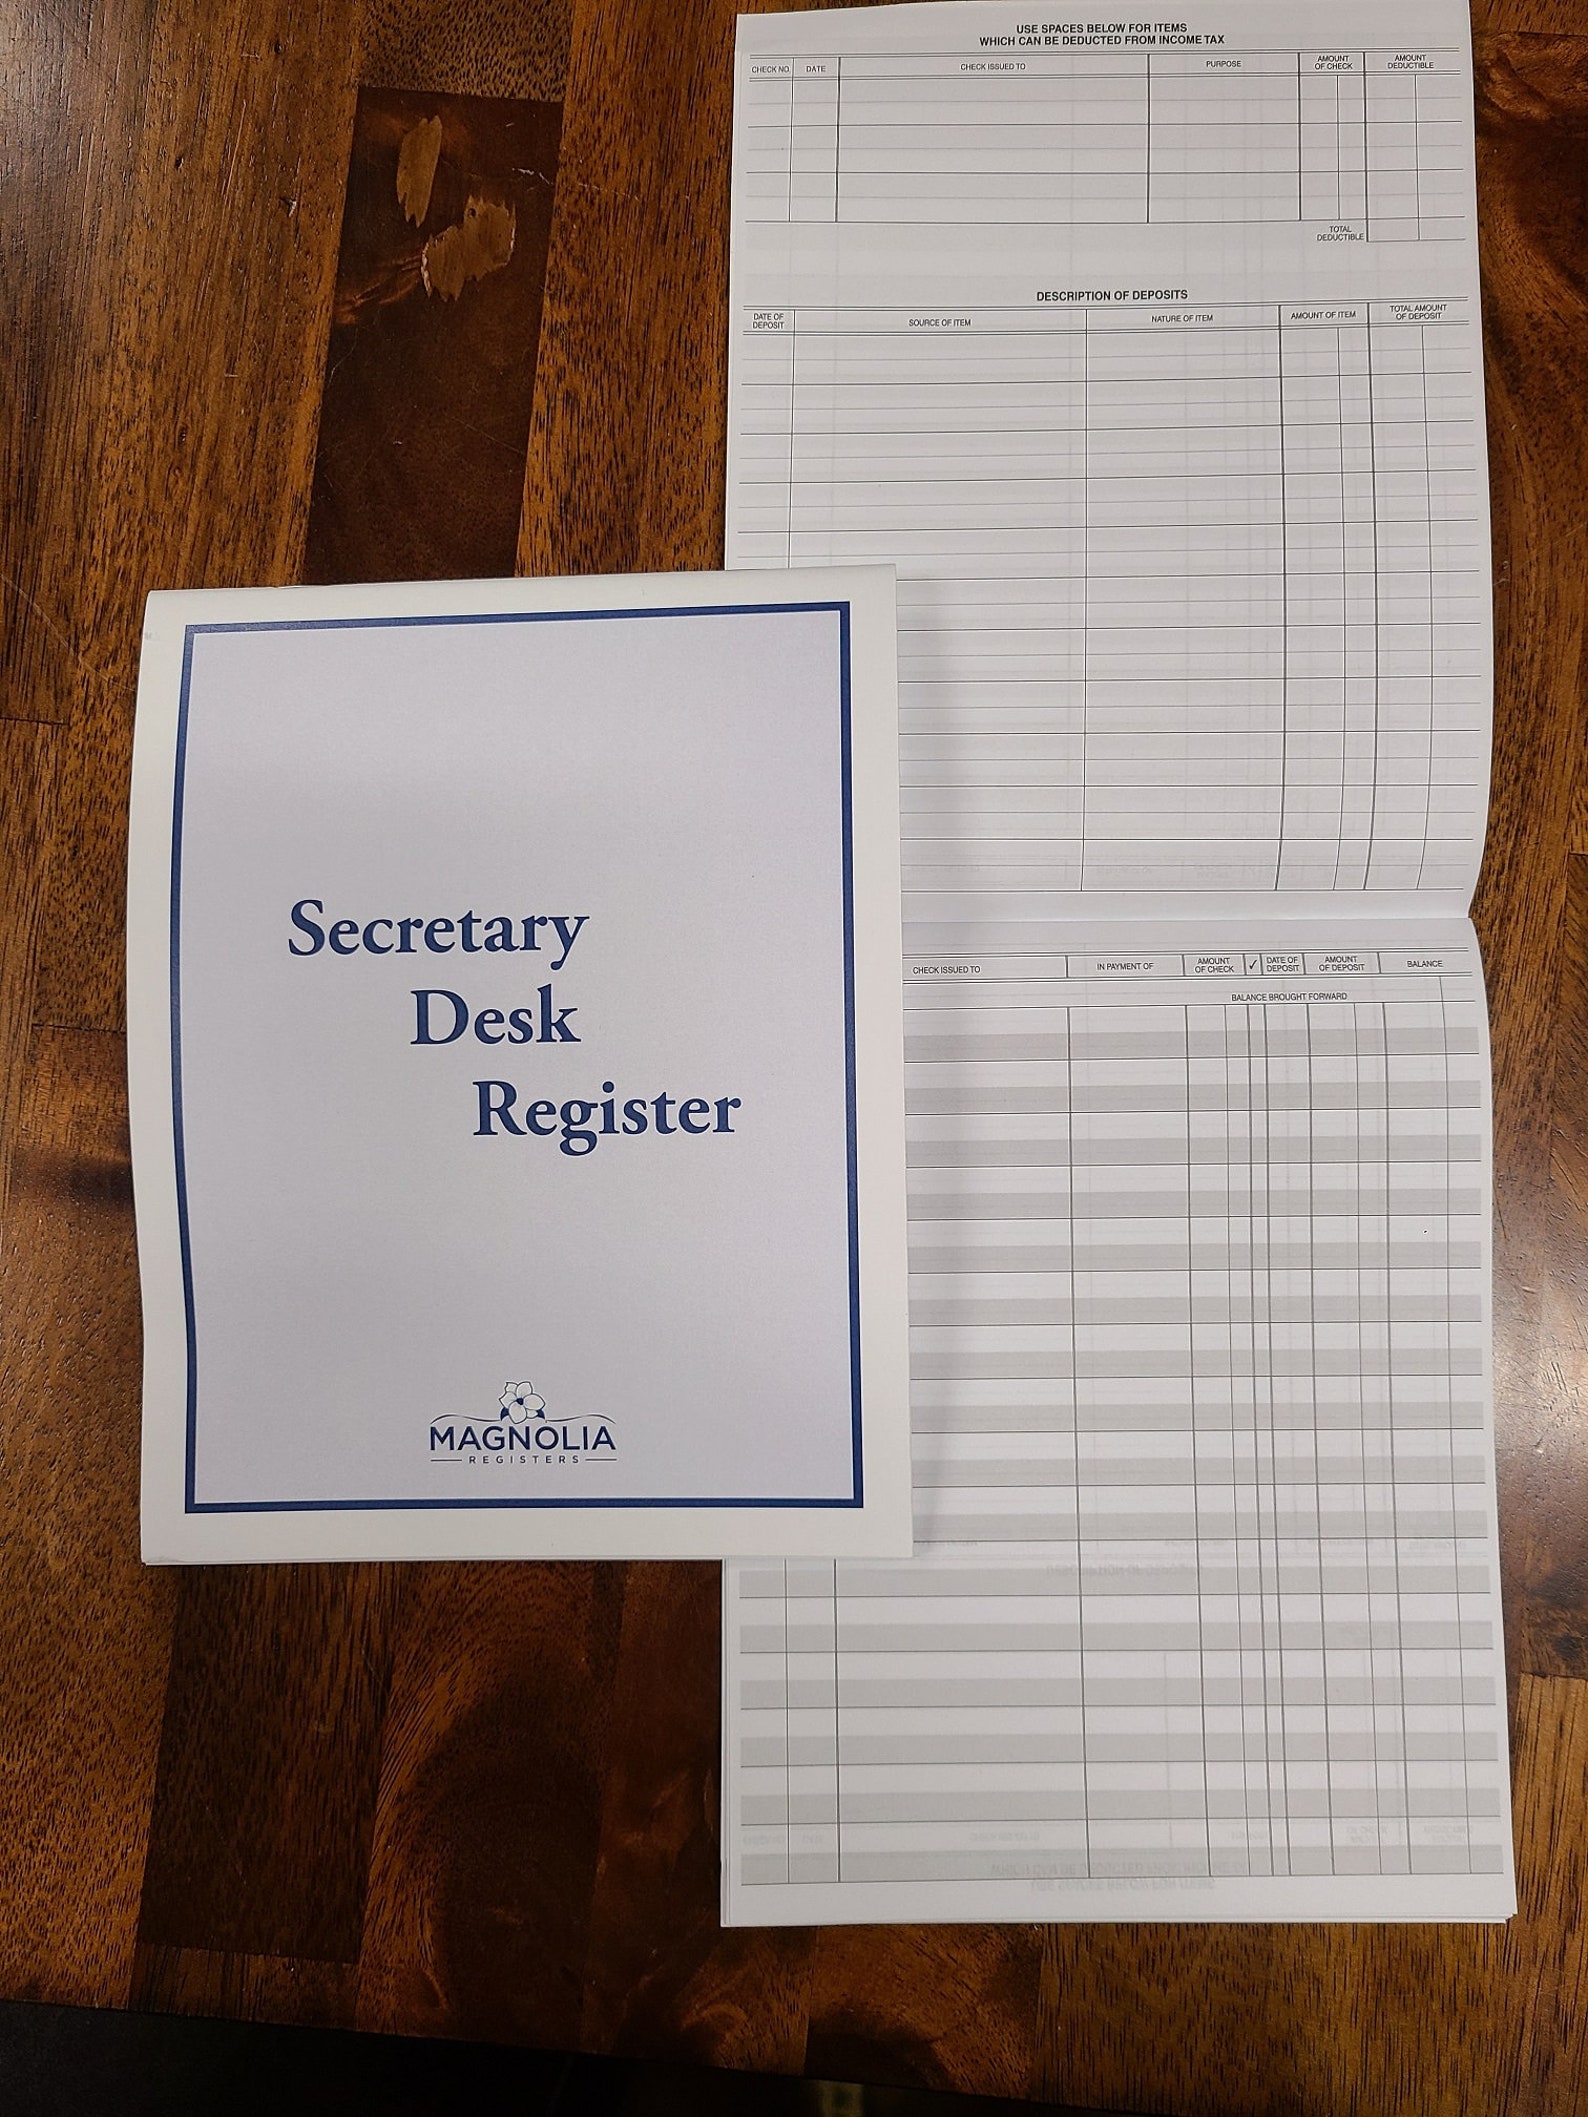 check-registers-for-deskbook-checks-secretary-desk-register-etsy